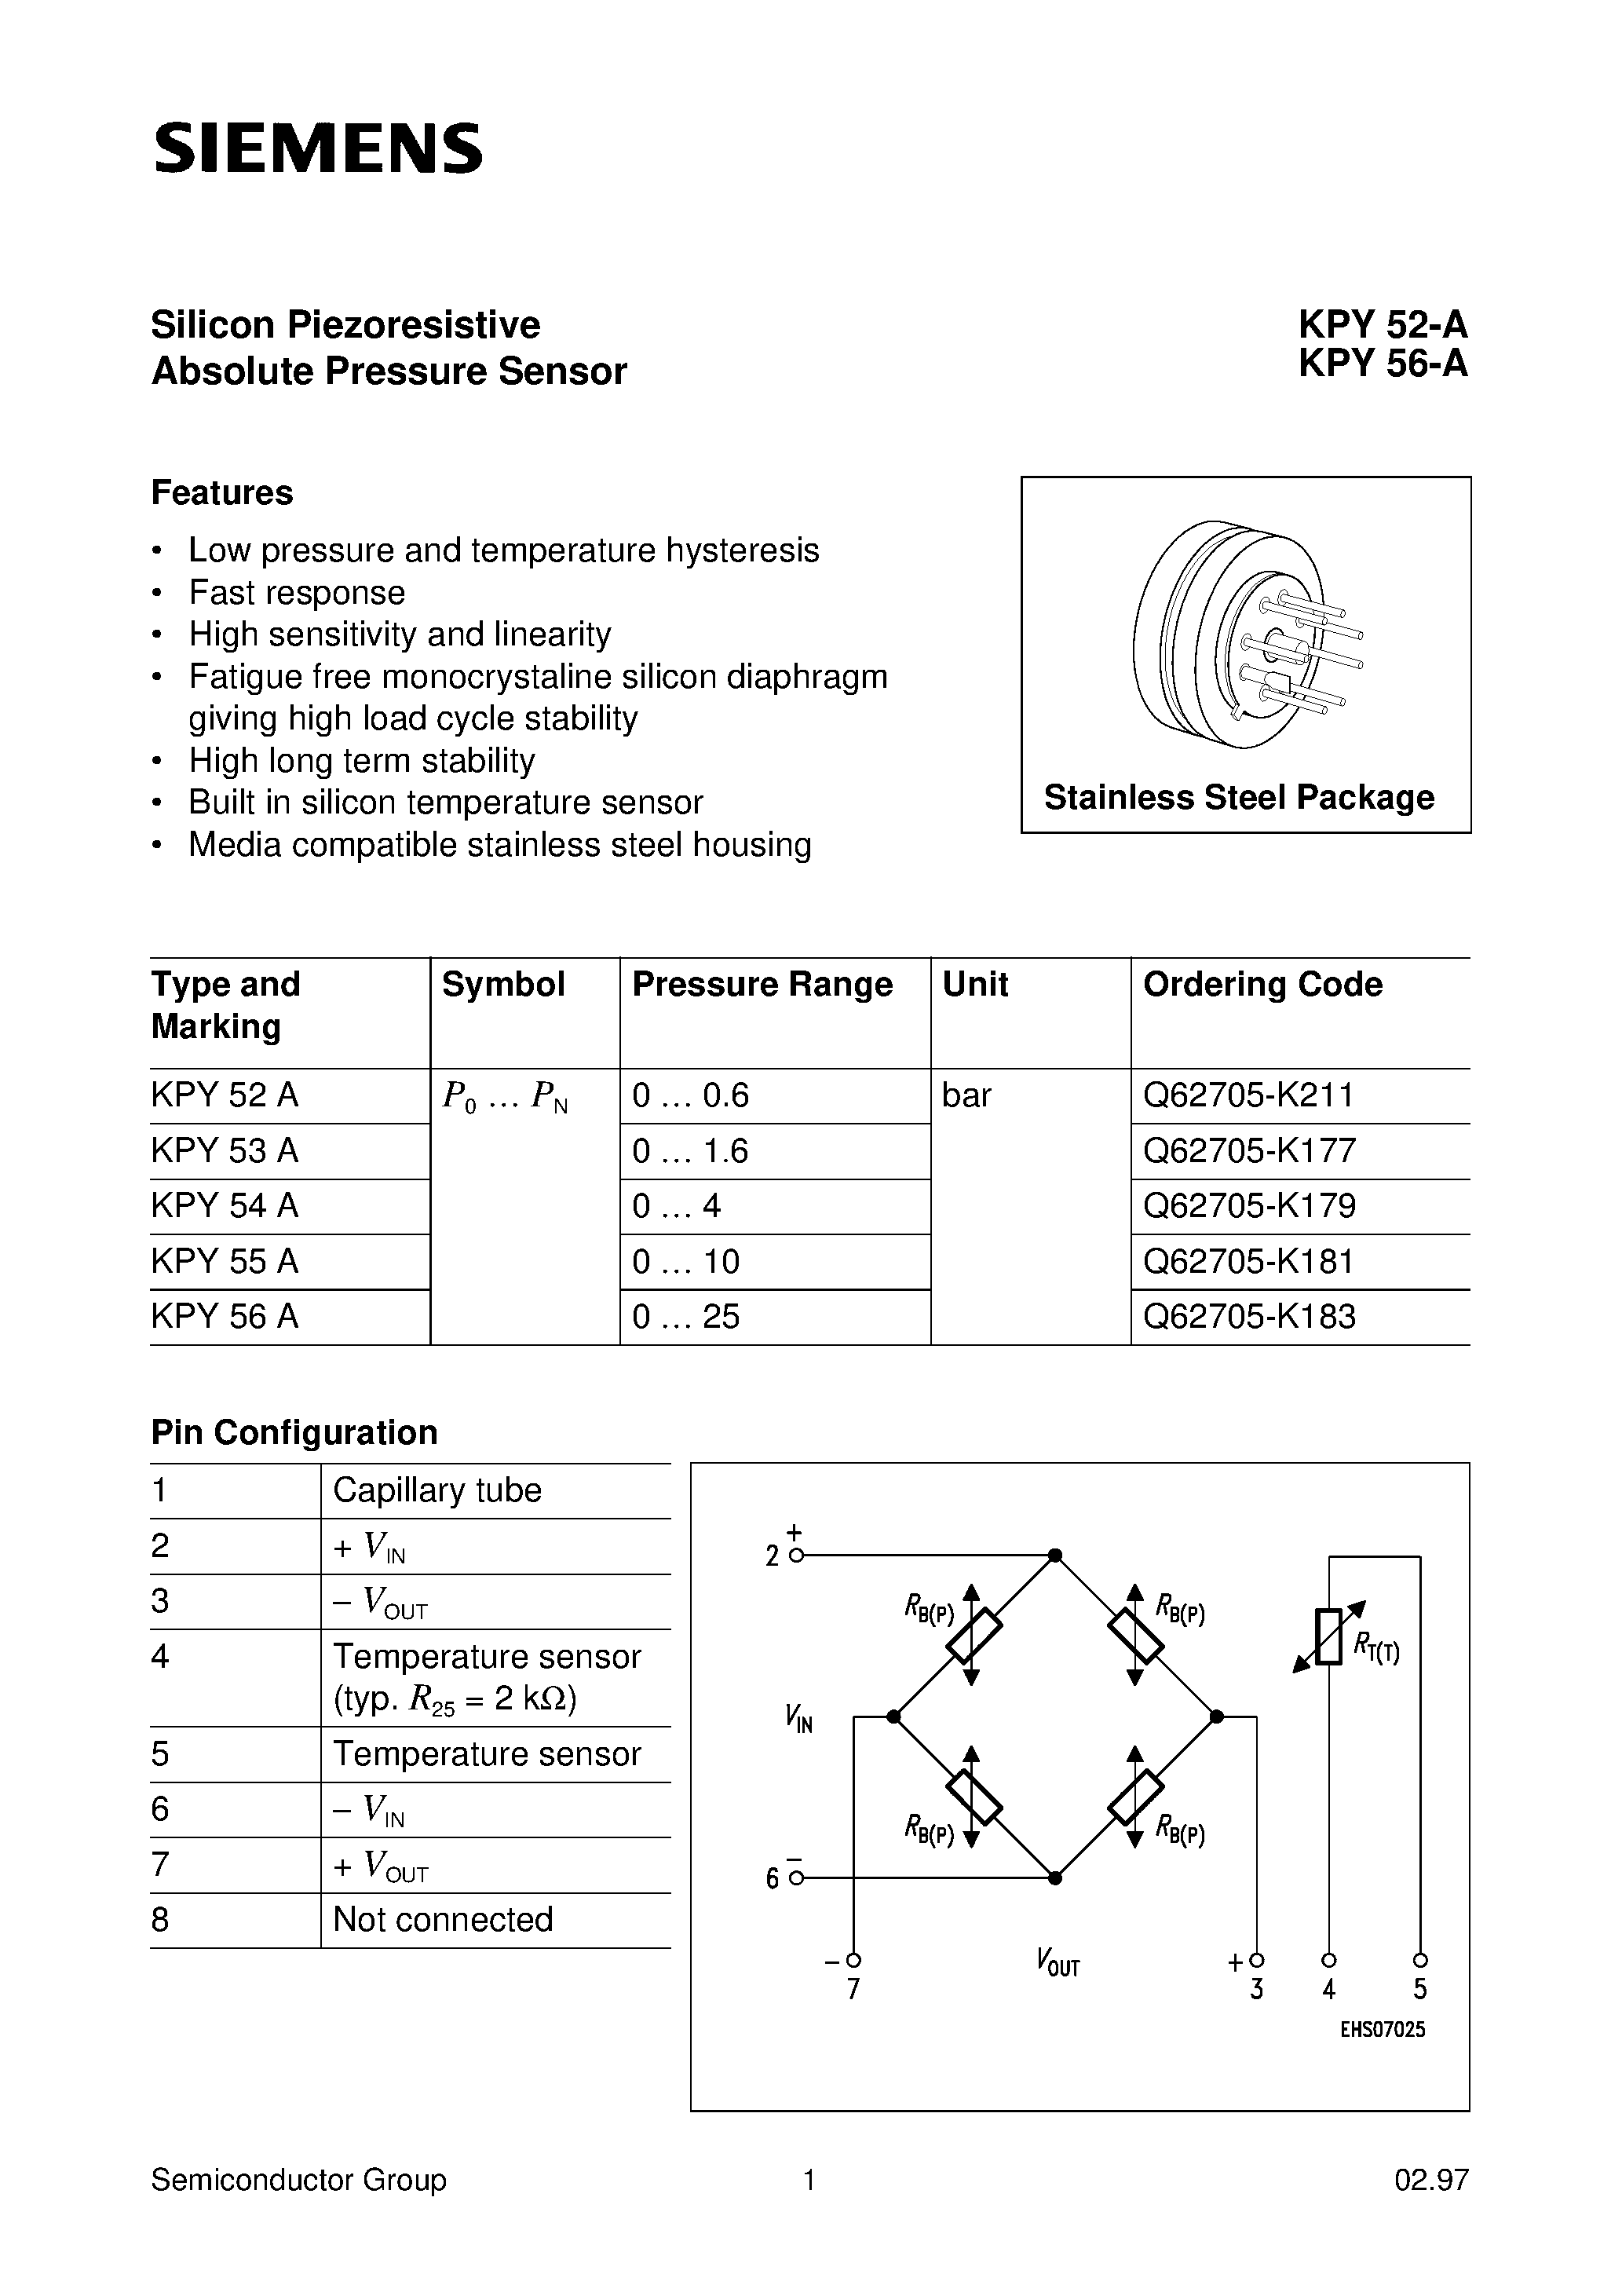 Даташит KPY52-A - (KPY52-A - KPY56-A) Silicon Piezoresistive Absolute Pressure Sensor страница 1